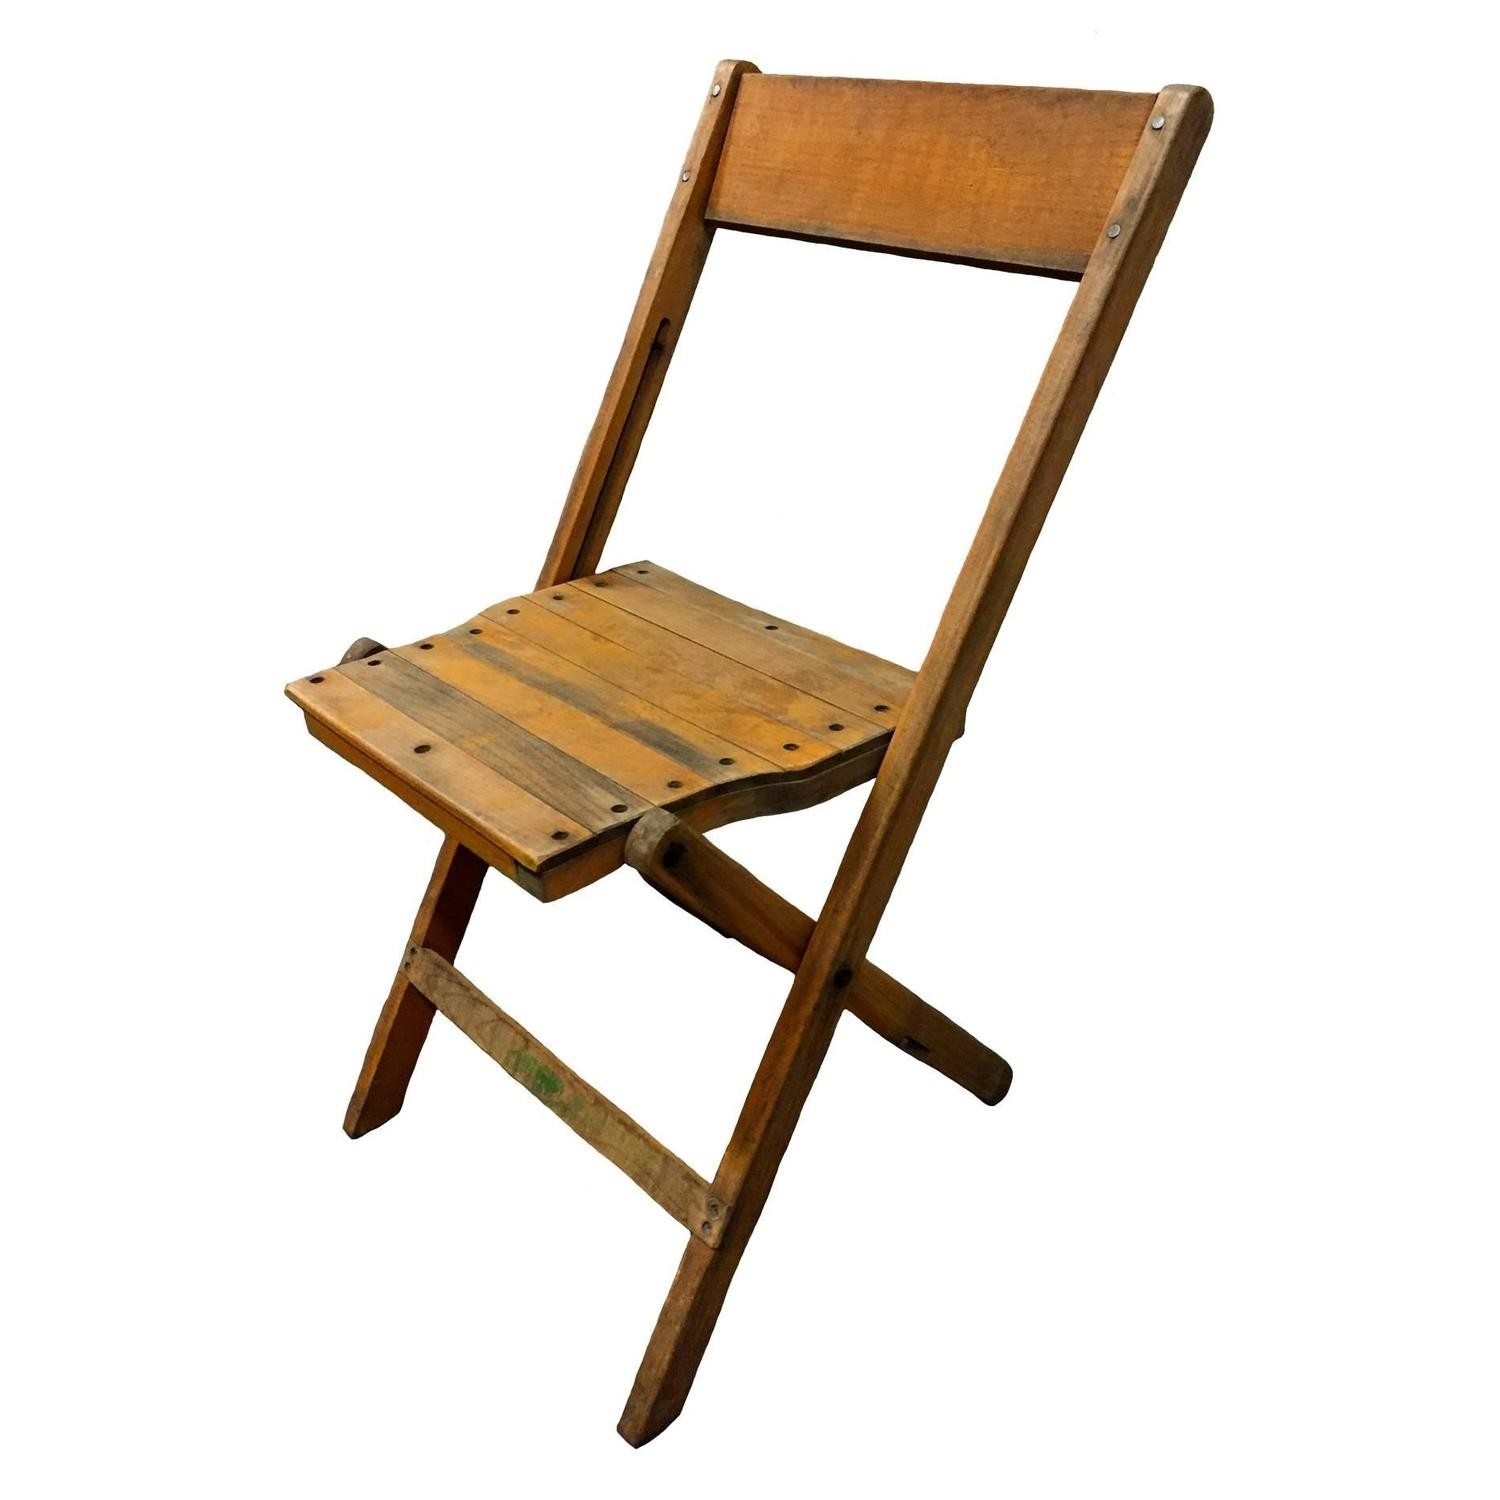 все виды складных деревянных стульев